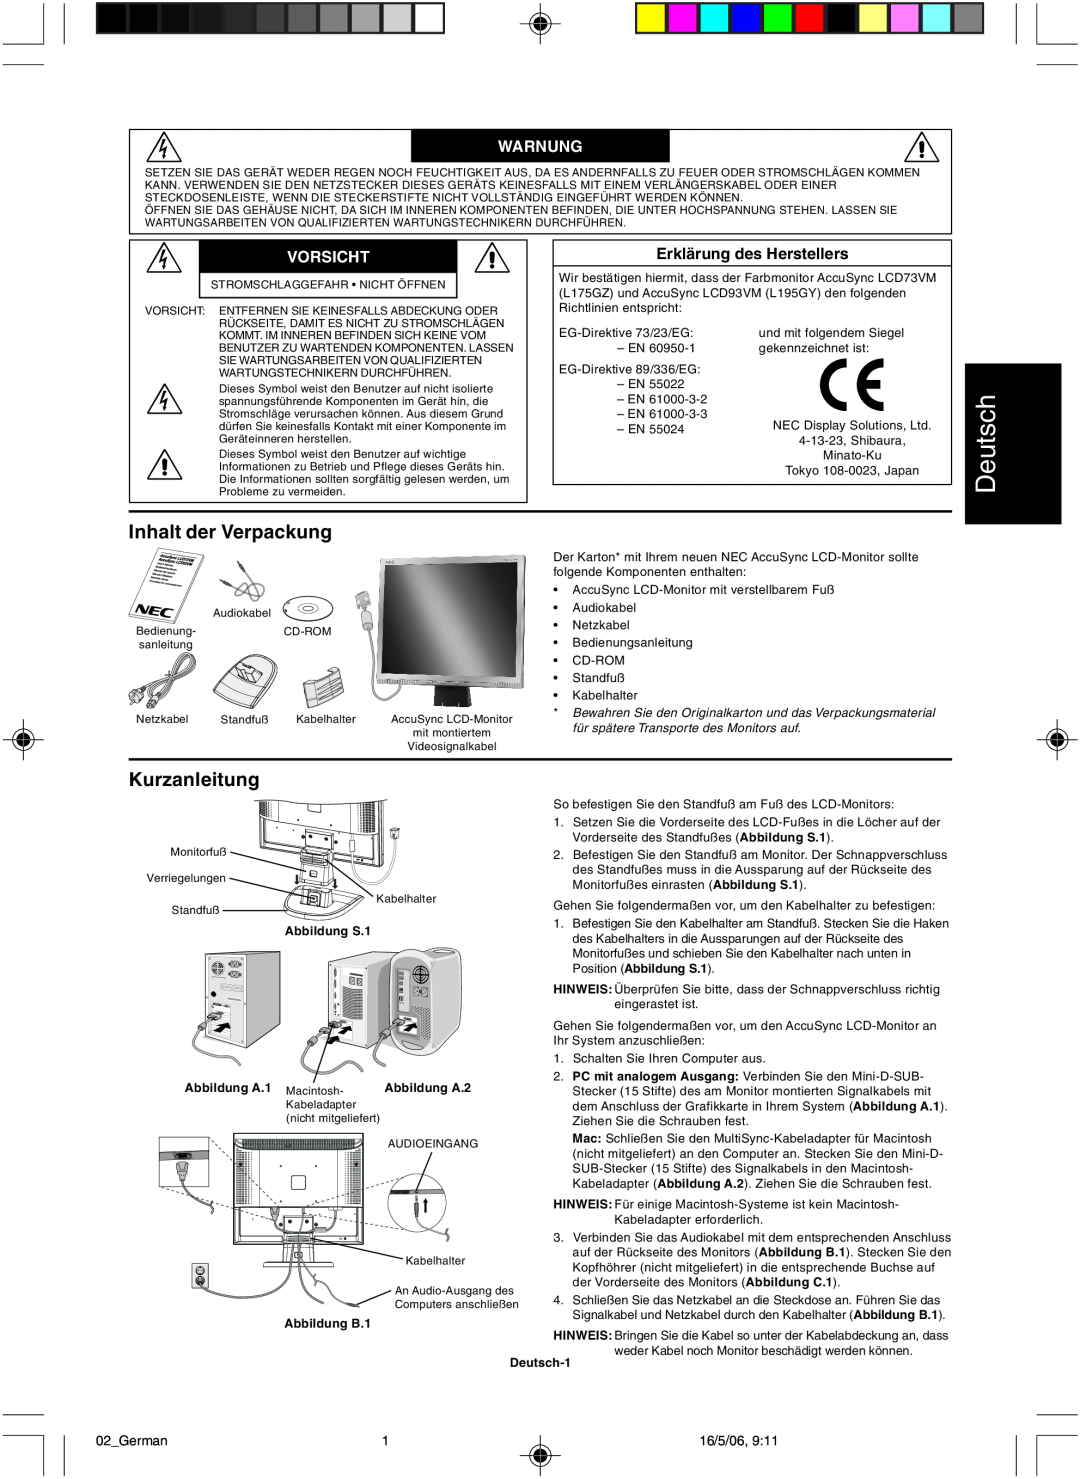 NEC LCD73VM user manual Deutsch, Inhalt der Verpackung, Kurzanleitung, Warnung, Vorsicht 